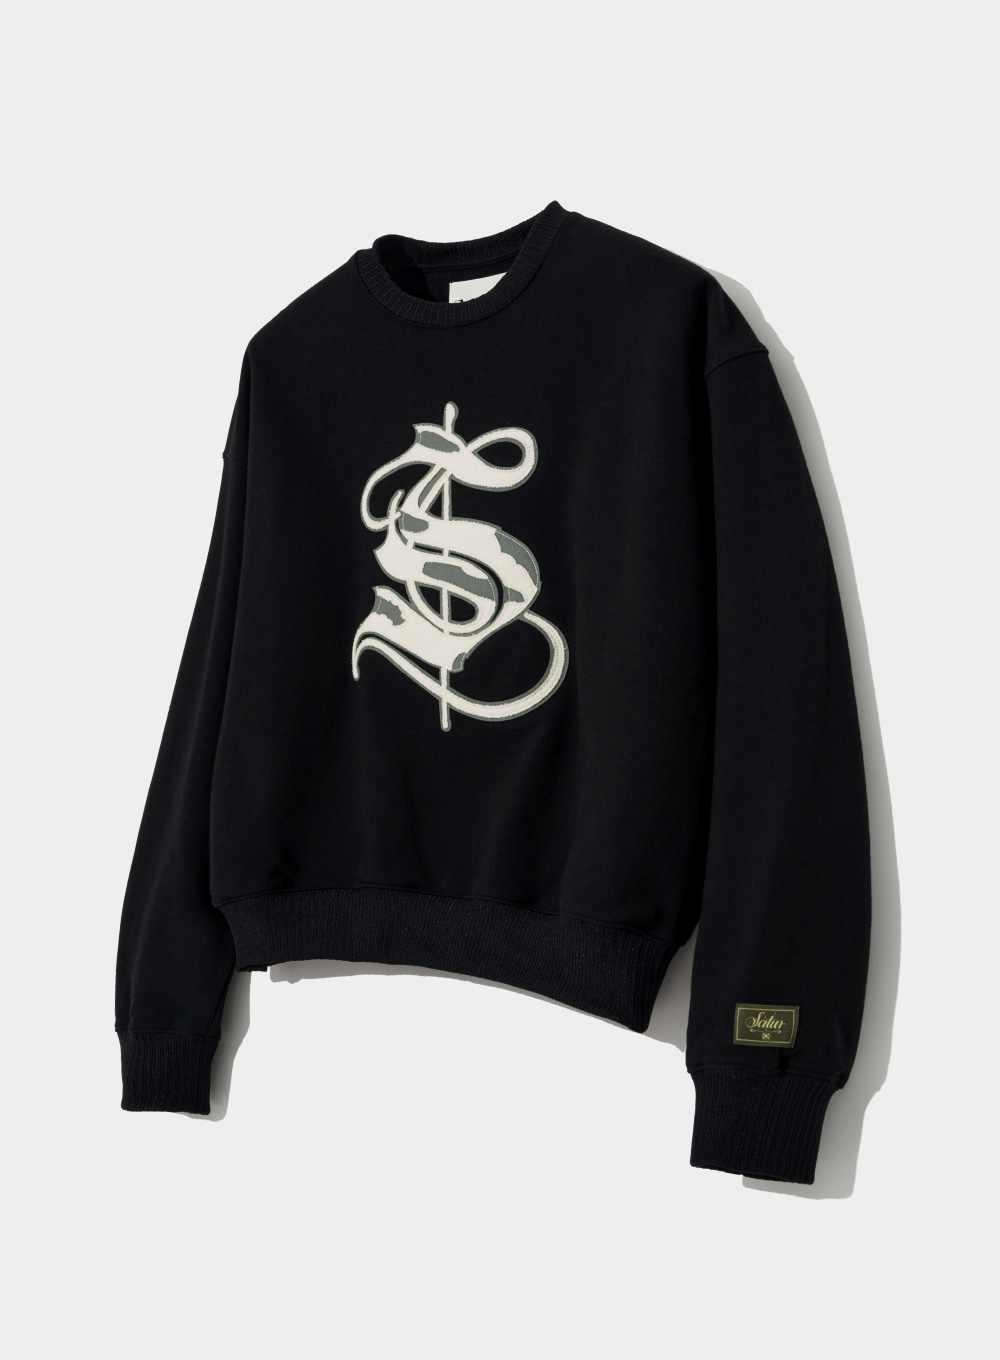 Casual Heritage Applique Sweatshirts - Resort Black